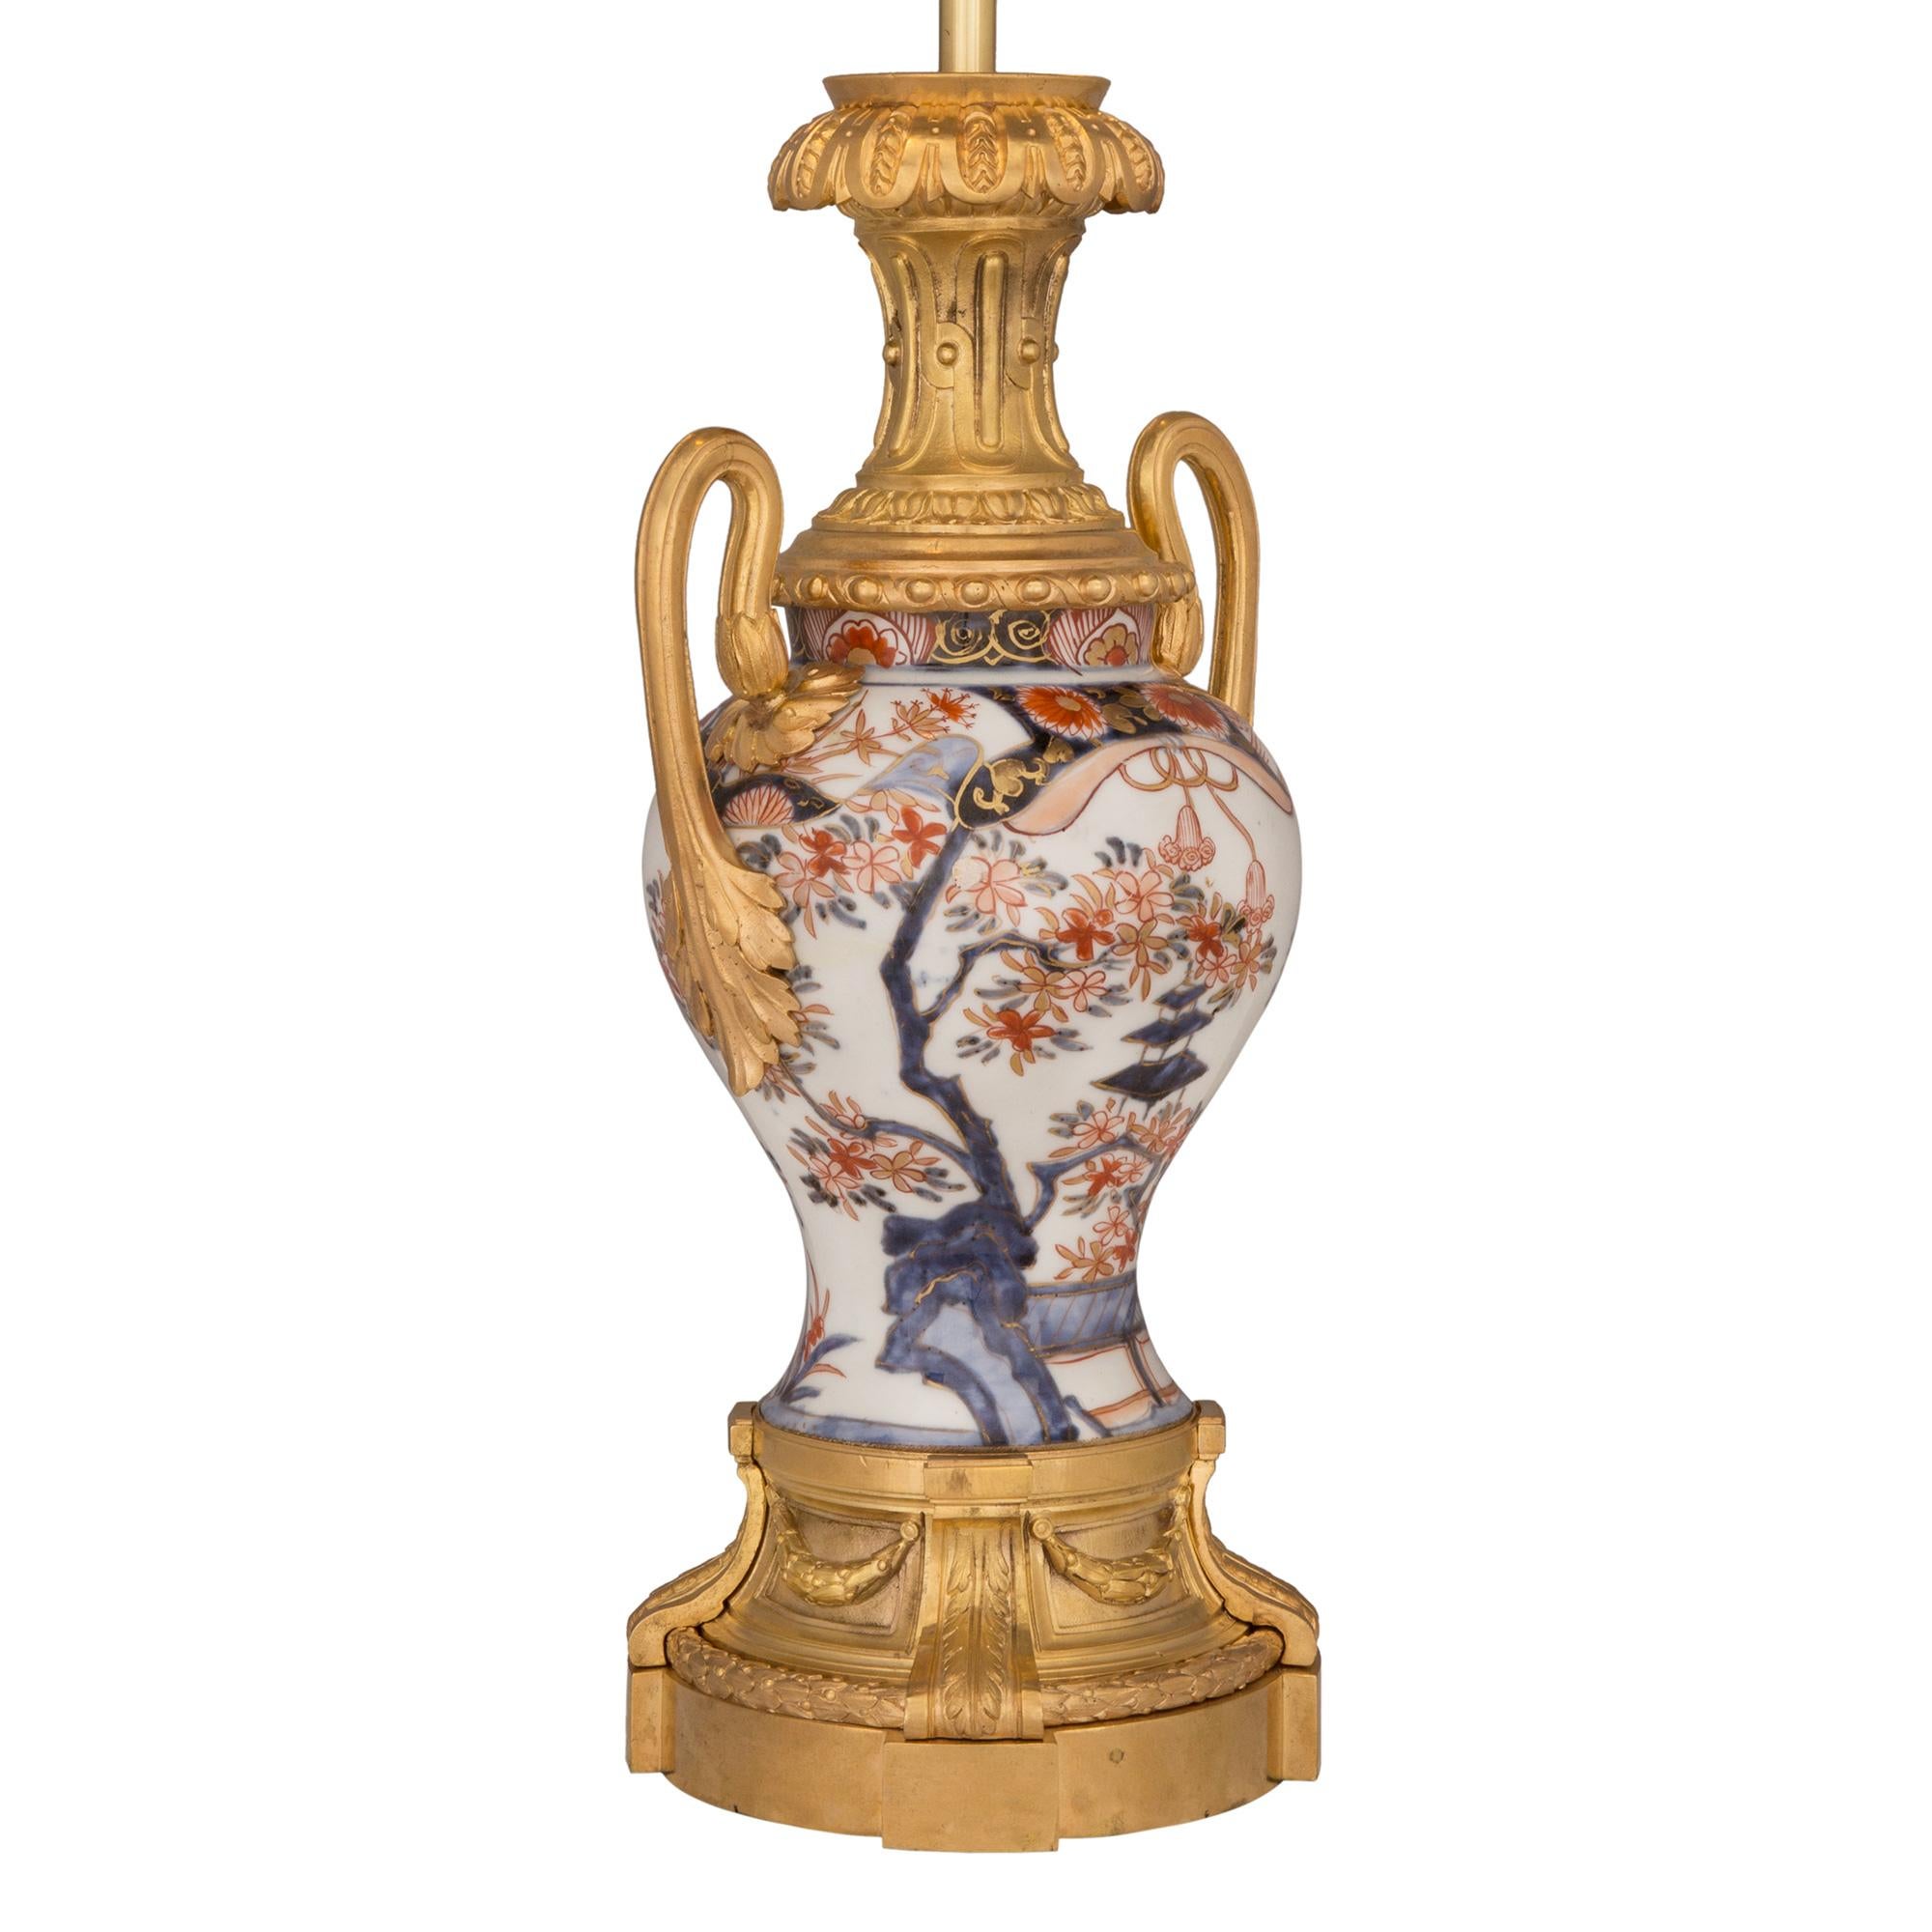 Une belle lampe de grande qualité en porcelaine et bronze doré de style Louis XVI du 19ème siècle, de collaboration entre l'Asie et la France. La lampe est surélevée par une élégante base en bronze doré, ornée de fines guirlandes de laurier et